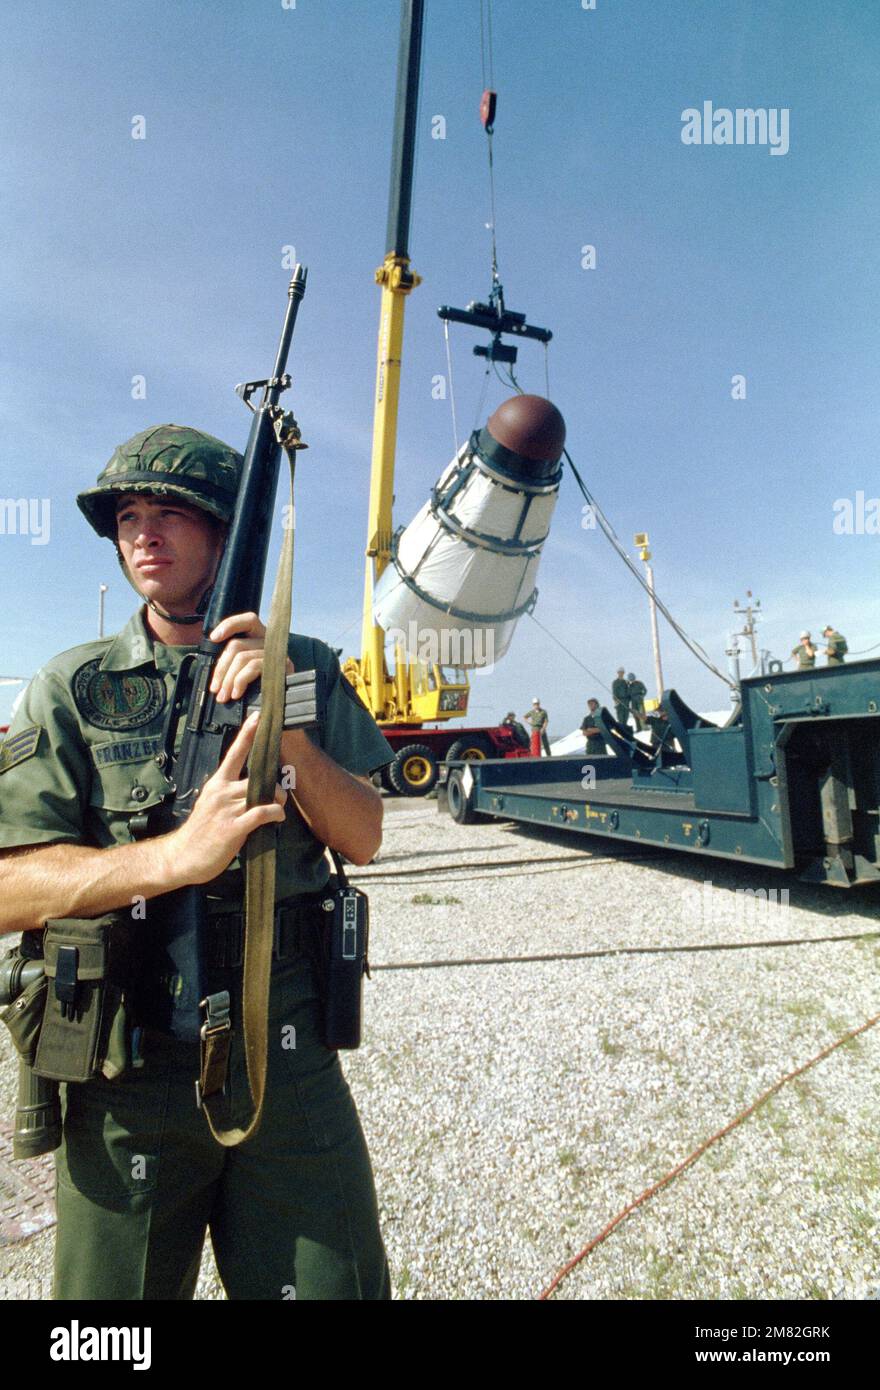 Un membre de l'escadron de la police de sécurité 381st, armé d'un fusil M16, se tient à l'état de garde lorsqu'un véhicule de retour Titan II est chargé sur une remorque. C'est le premier missile Titan II à être désactivé chez McConnell. Base : McConnell Air Force base État : Kansas (KS) pays : États-Unis d'Amérique (USA) Banque D'Images